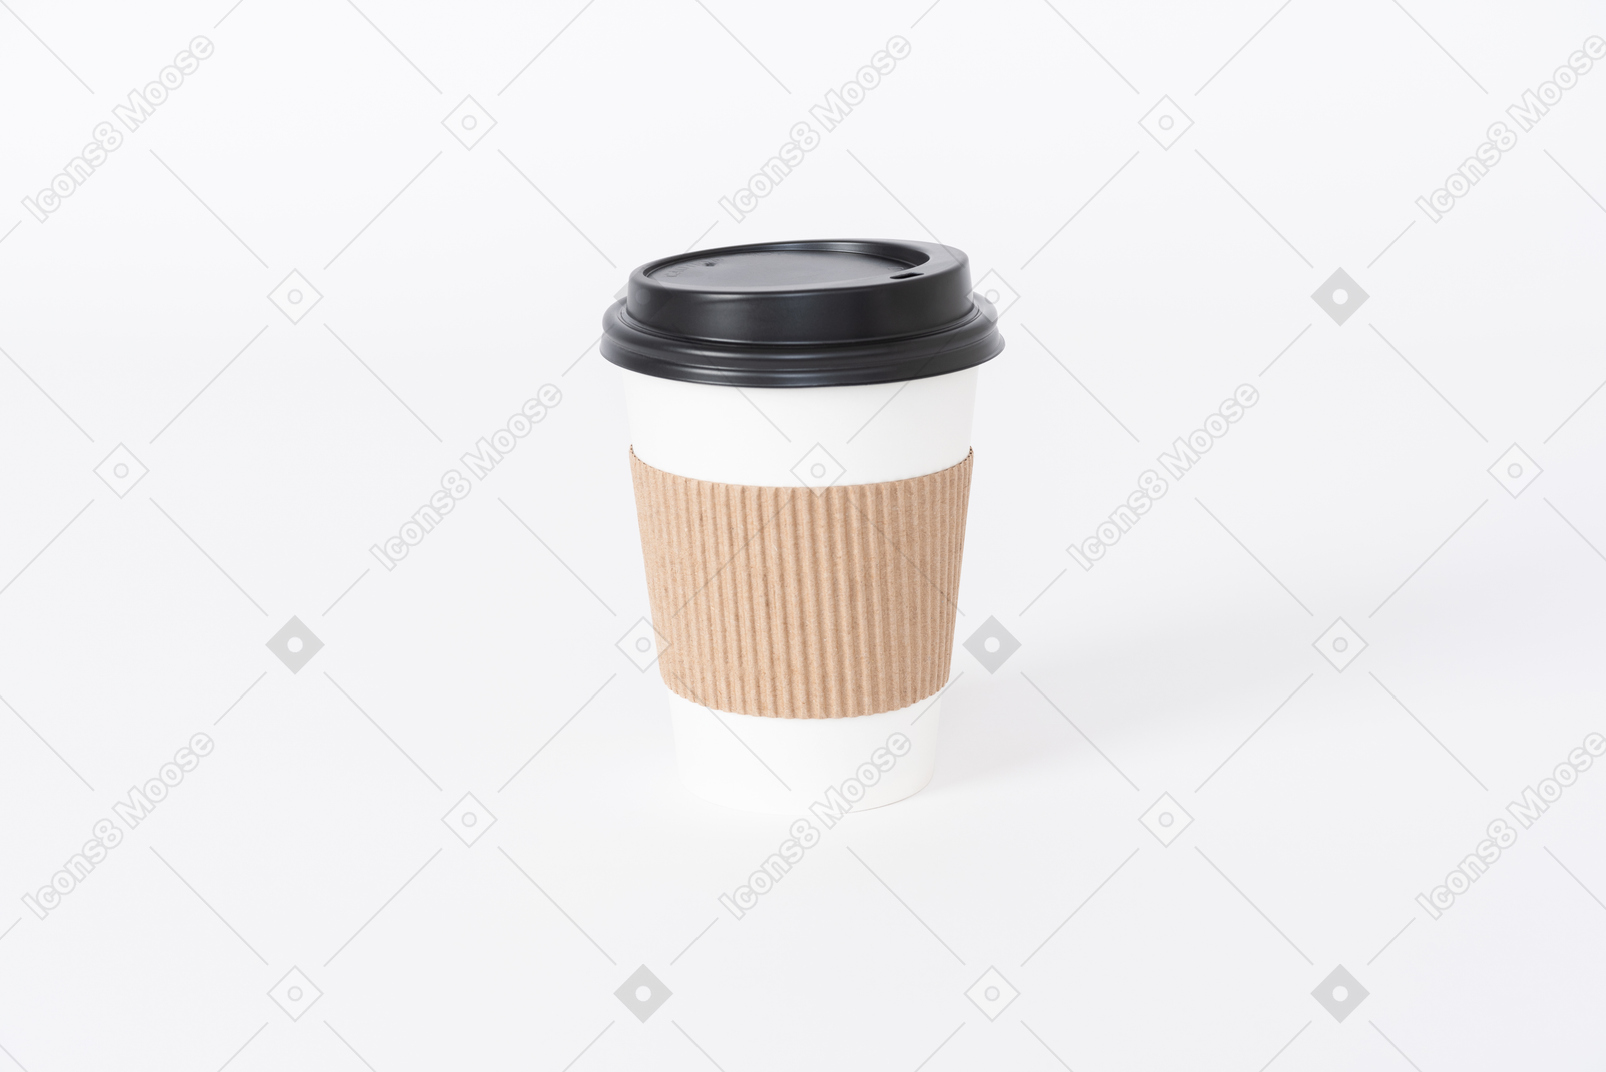 Kaffee in mehrwegbecher mitbringen